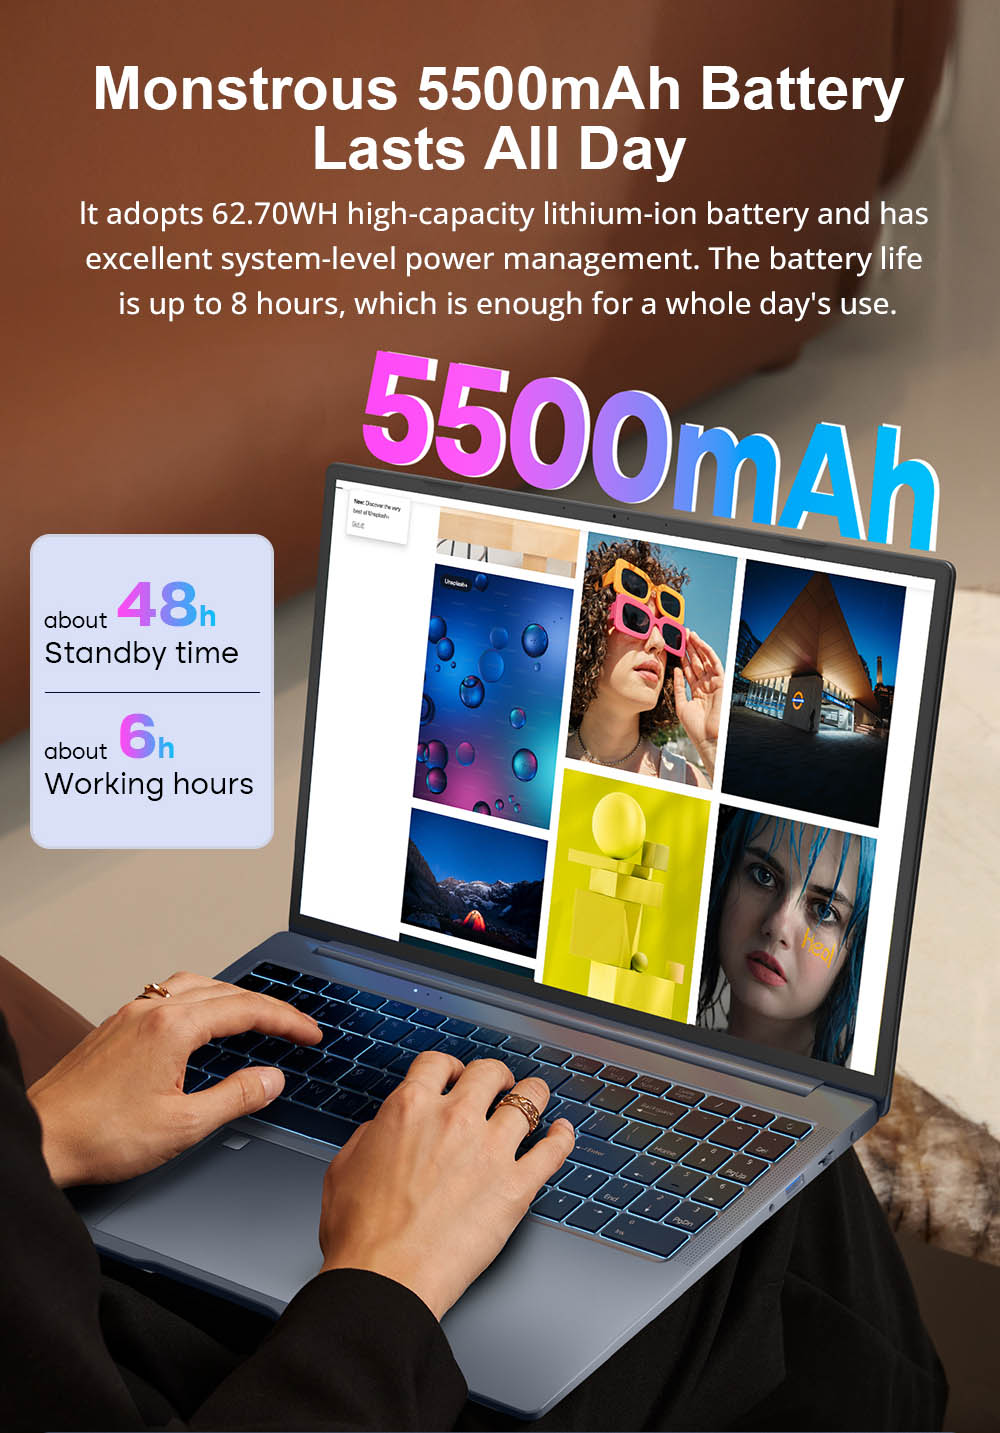 Ninkear N16 Pro Laptop, 16 2560*1600 IPS Display mit 165 Hz , Intel Core i7-13620H 10 Kerne bis zu 4,9 GHz